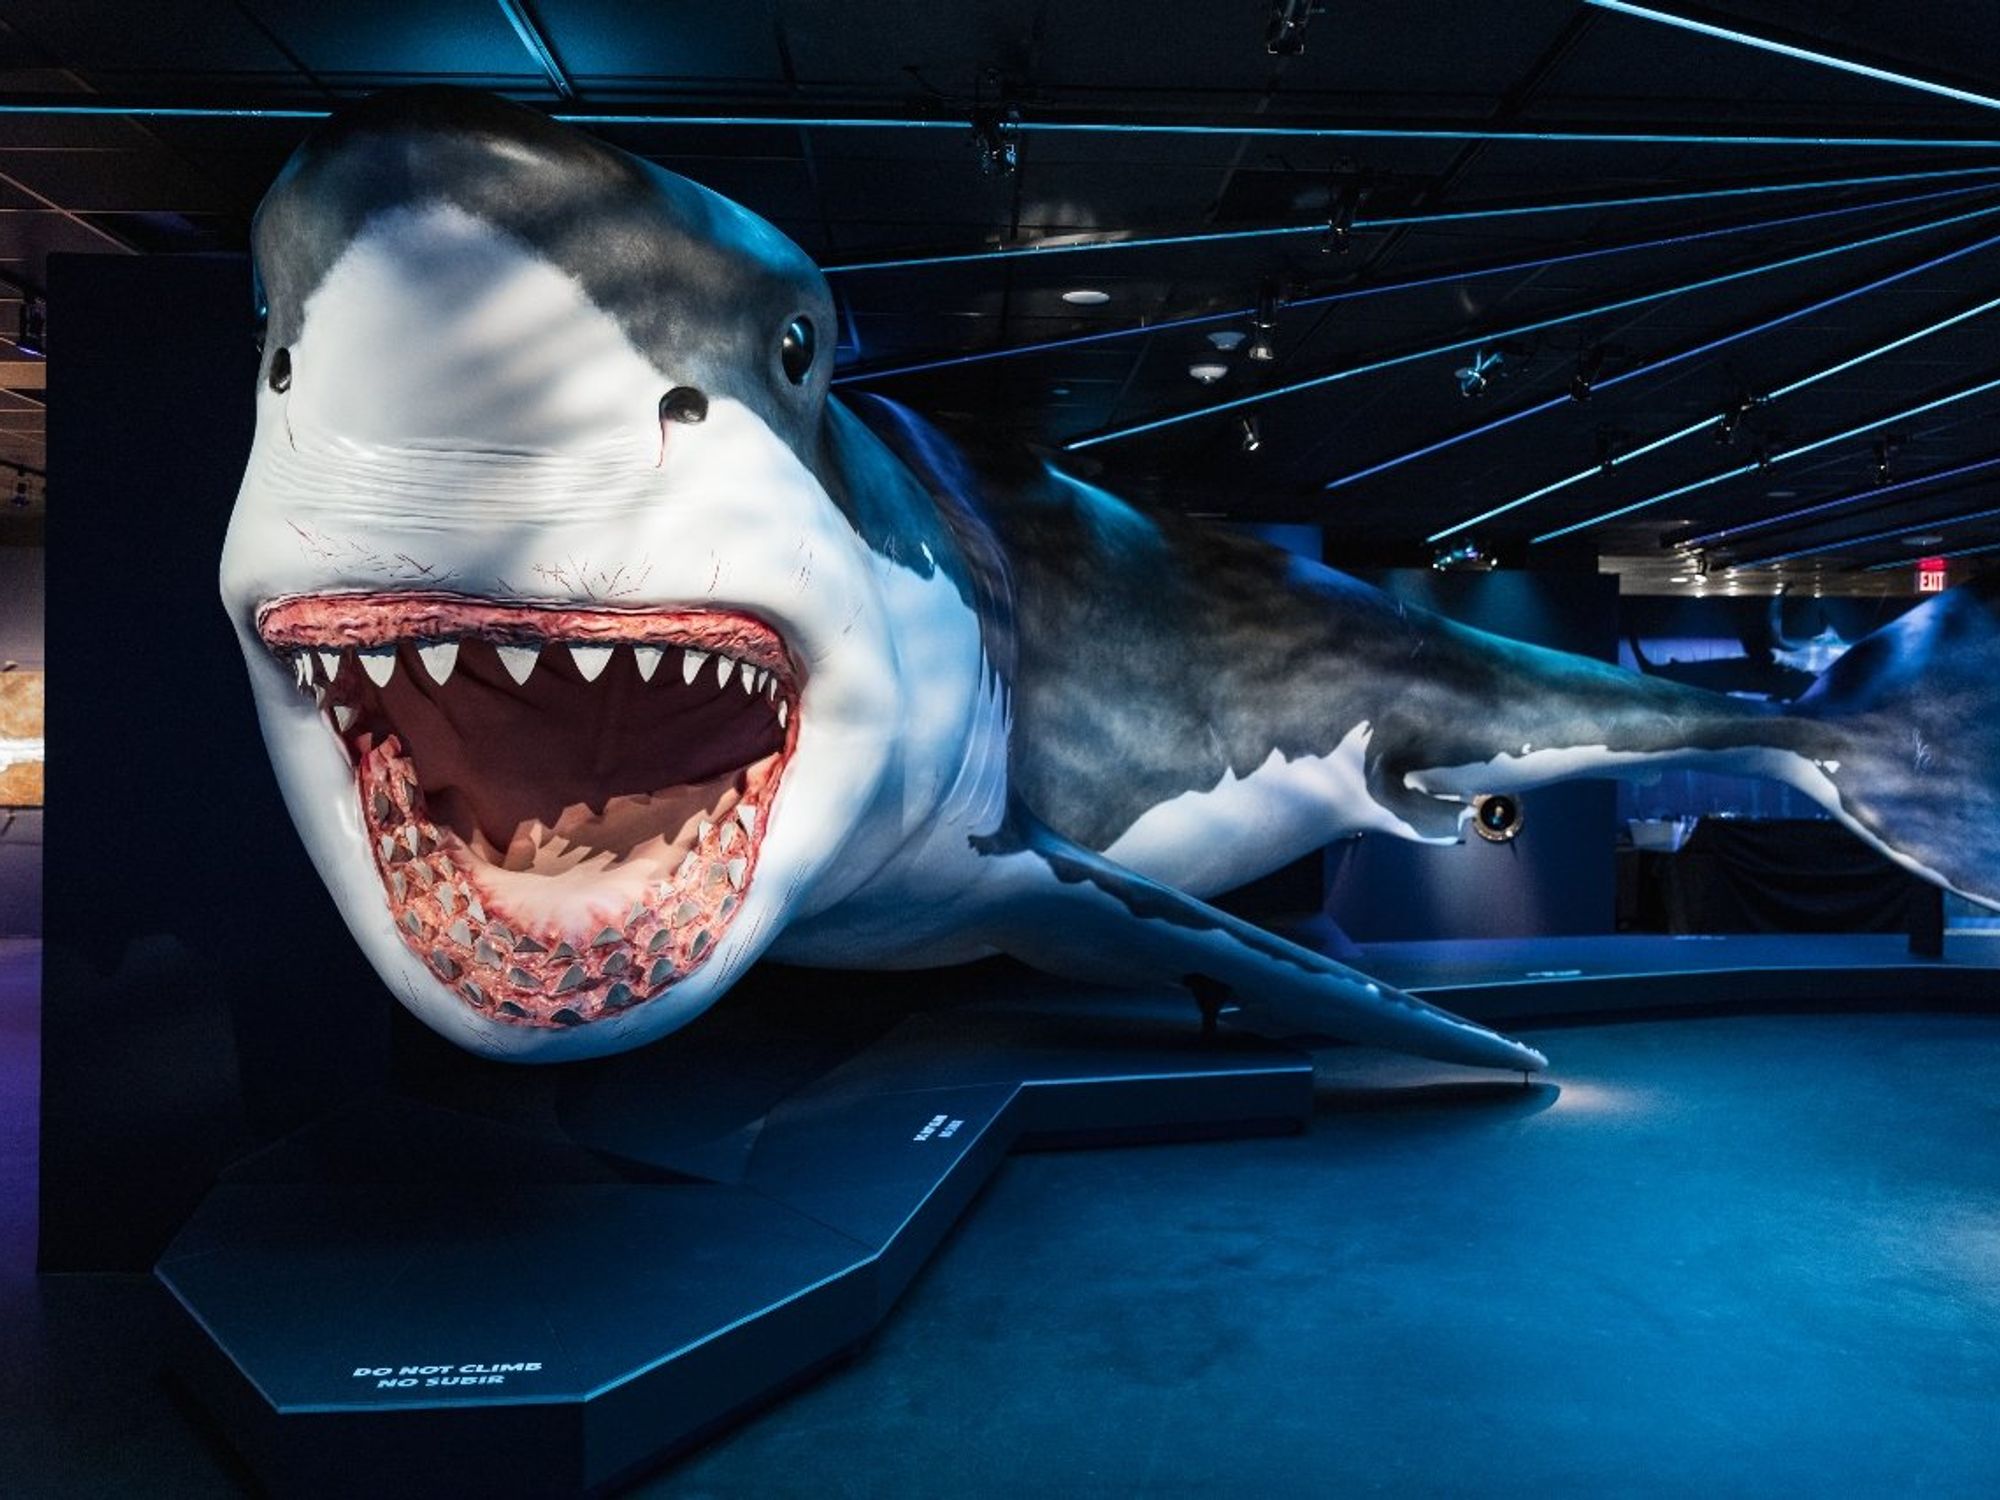 Sharks! The Meg, The Monsters & The Myths HMNS